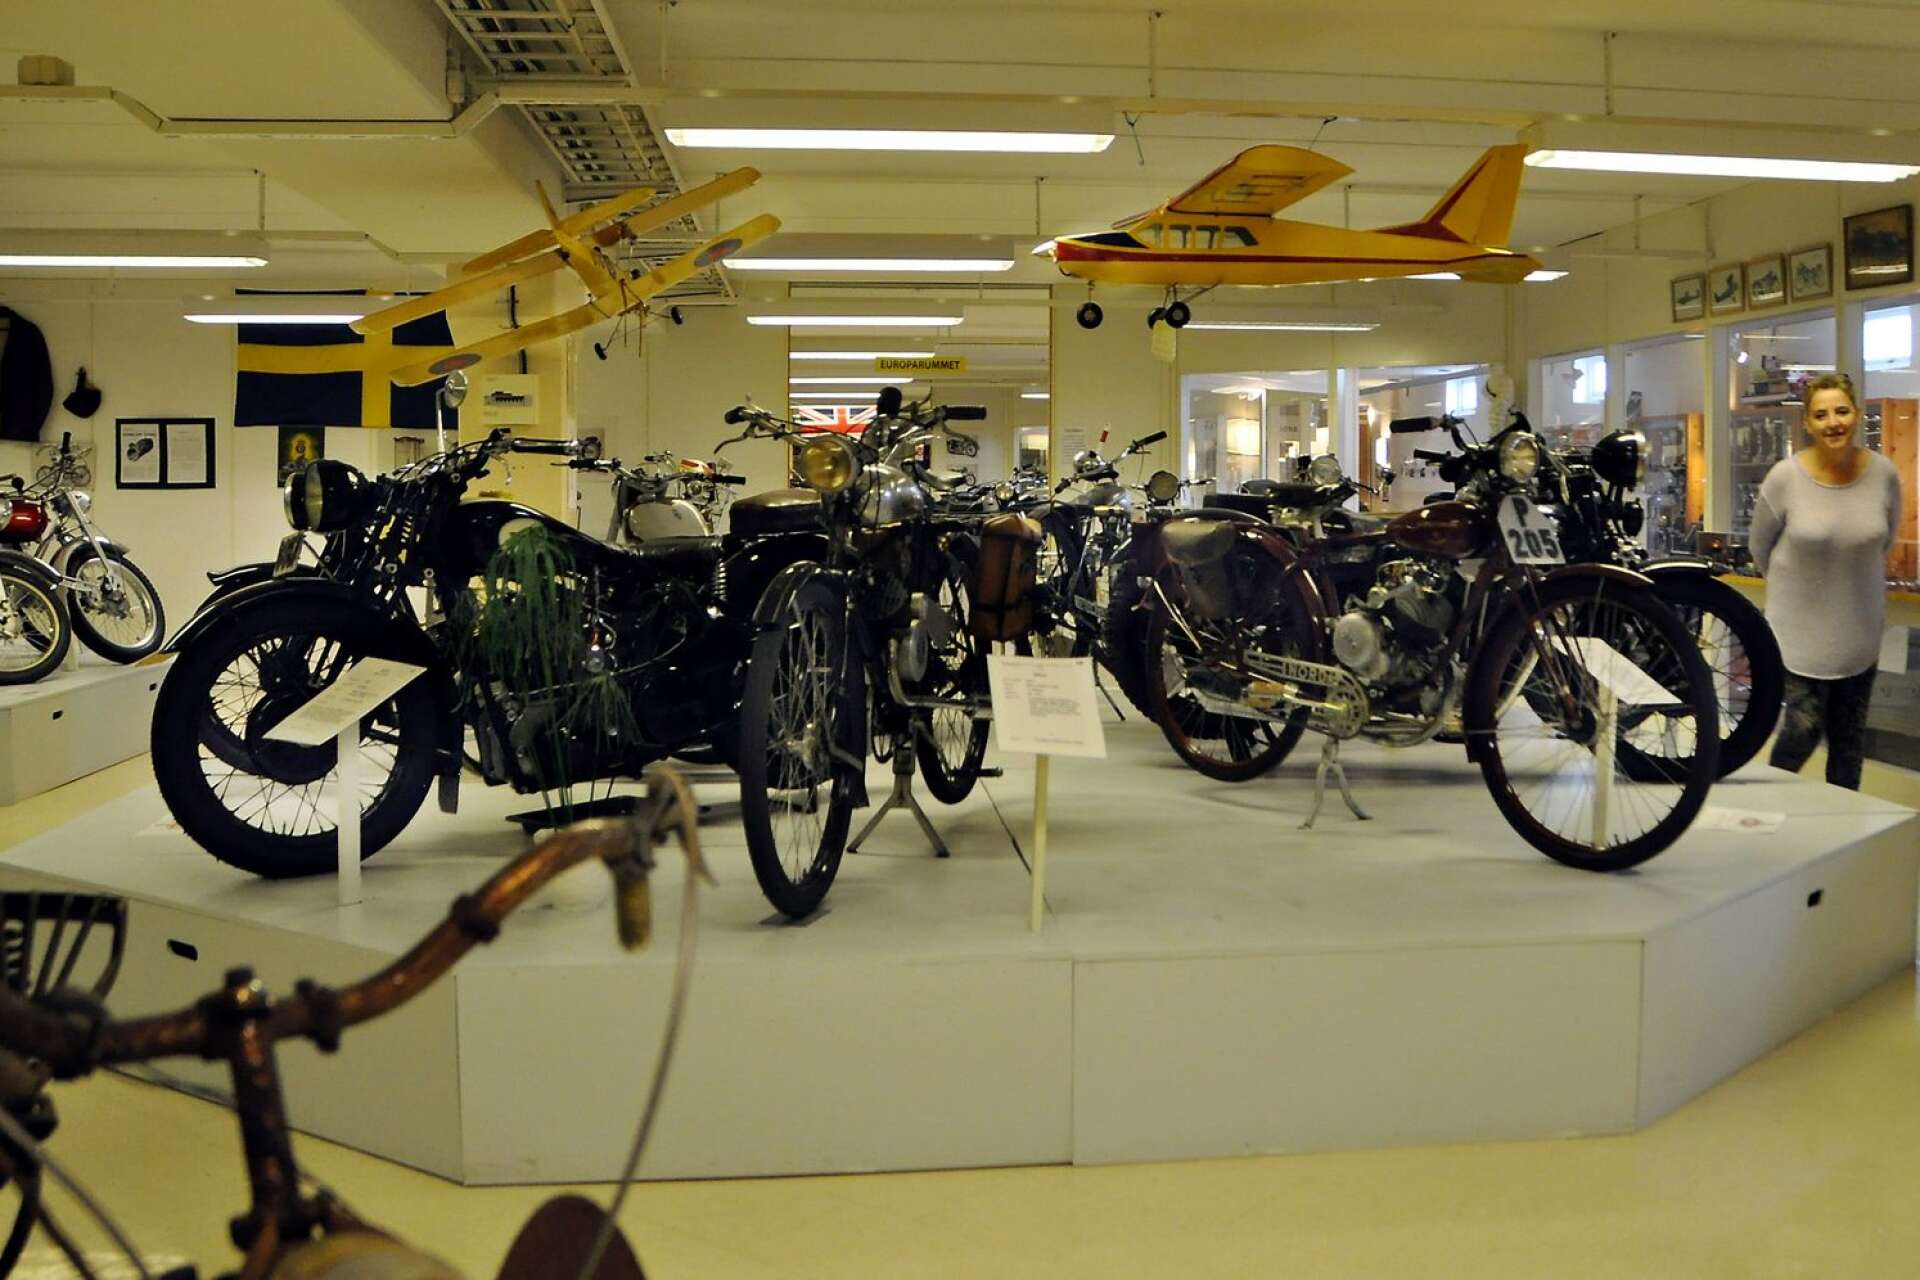 Museet ägs och drivs av den lokala mc-föreningen Club MCV Bohus-Dal och motorcyklarna är även ägda av medlemmarna själva. Det är medlemmarna som renoverat motorcyklarna, varav de flesta är helt i bruksskick och körklara. 